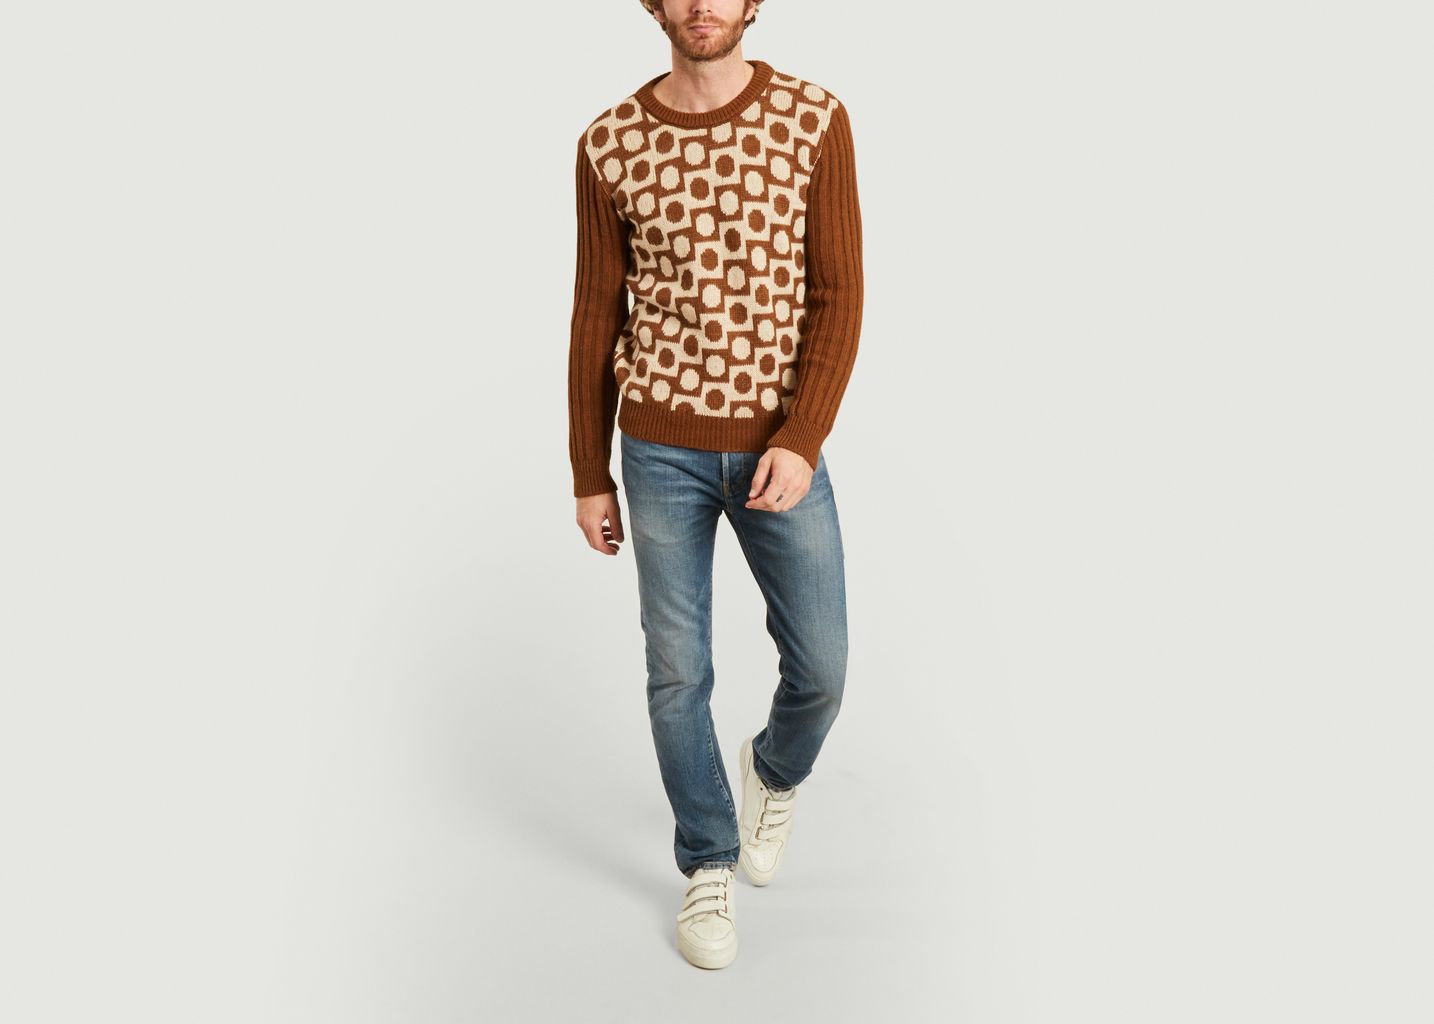 Stuart geometric pattern sweater - Le Mont St Michel